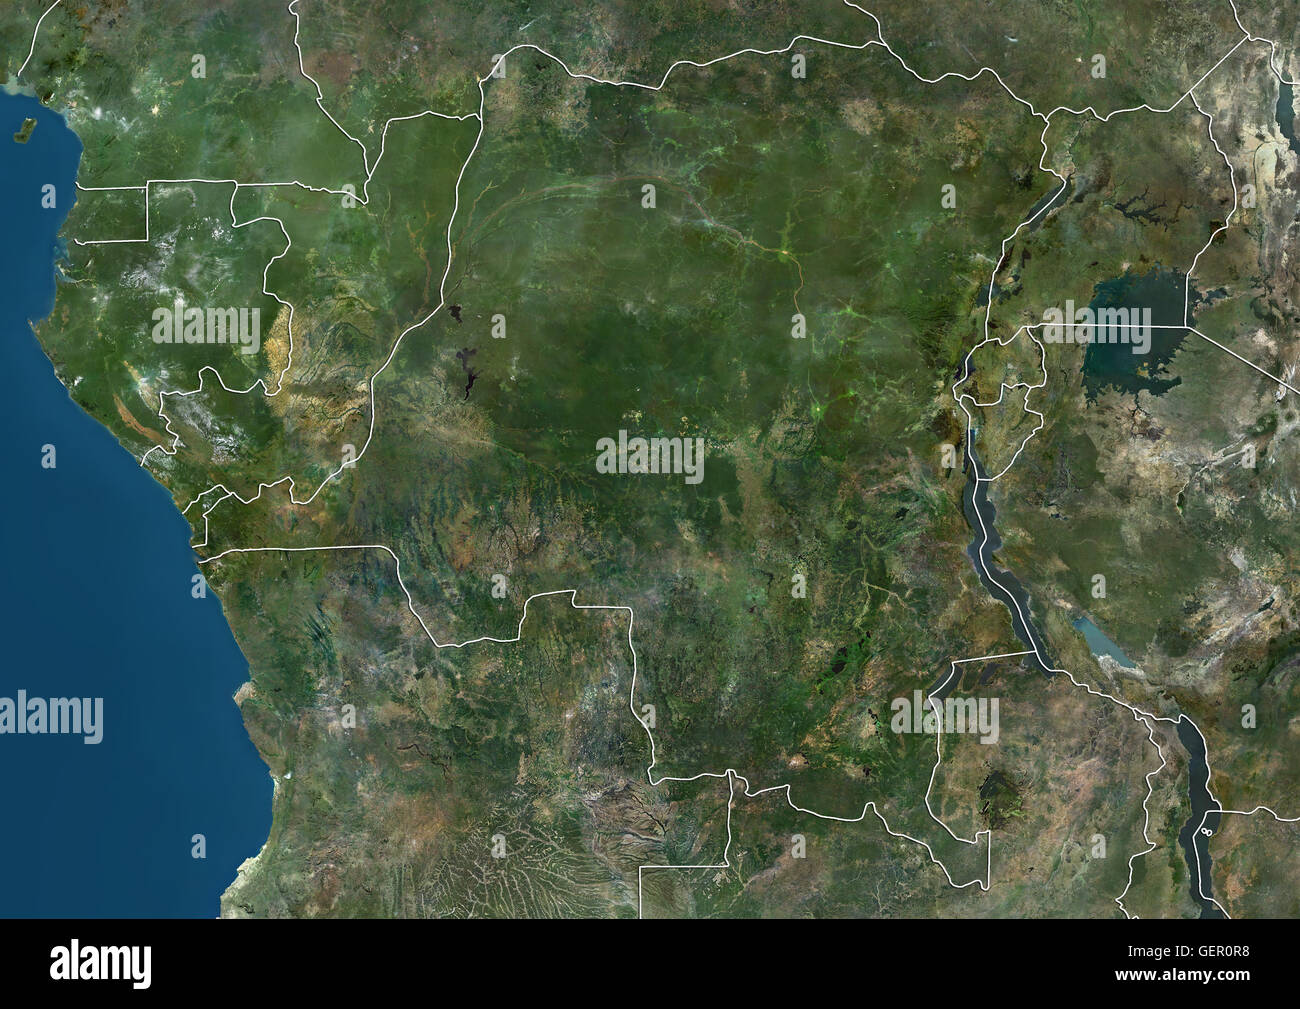 Vista satélite de África Central (con los límites del país) mostrando el Gabón, Guinea Ecuatorial, República del Congo, República Democrática del Congo, Burundi, Rwanda y Uganda. Esta imagen fue compilado a partir de datos adquiridos por los satélites Landsat. Foto de stock